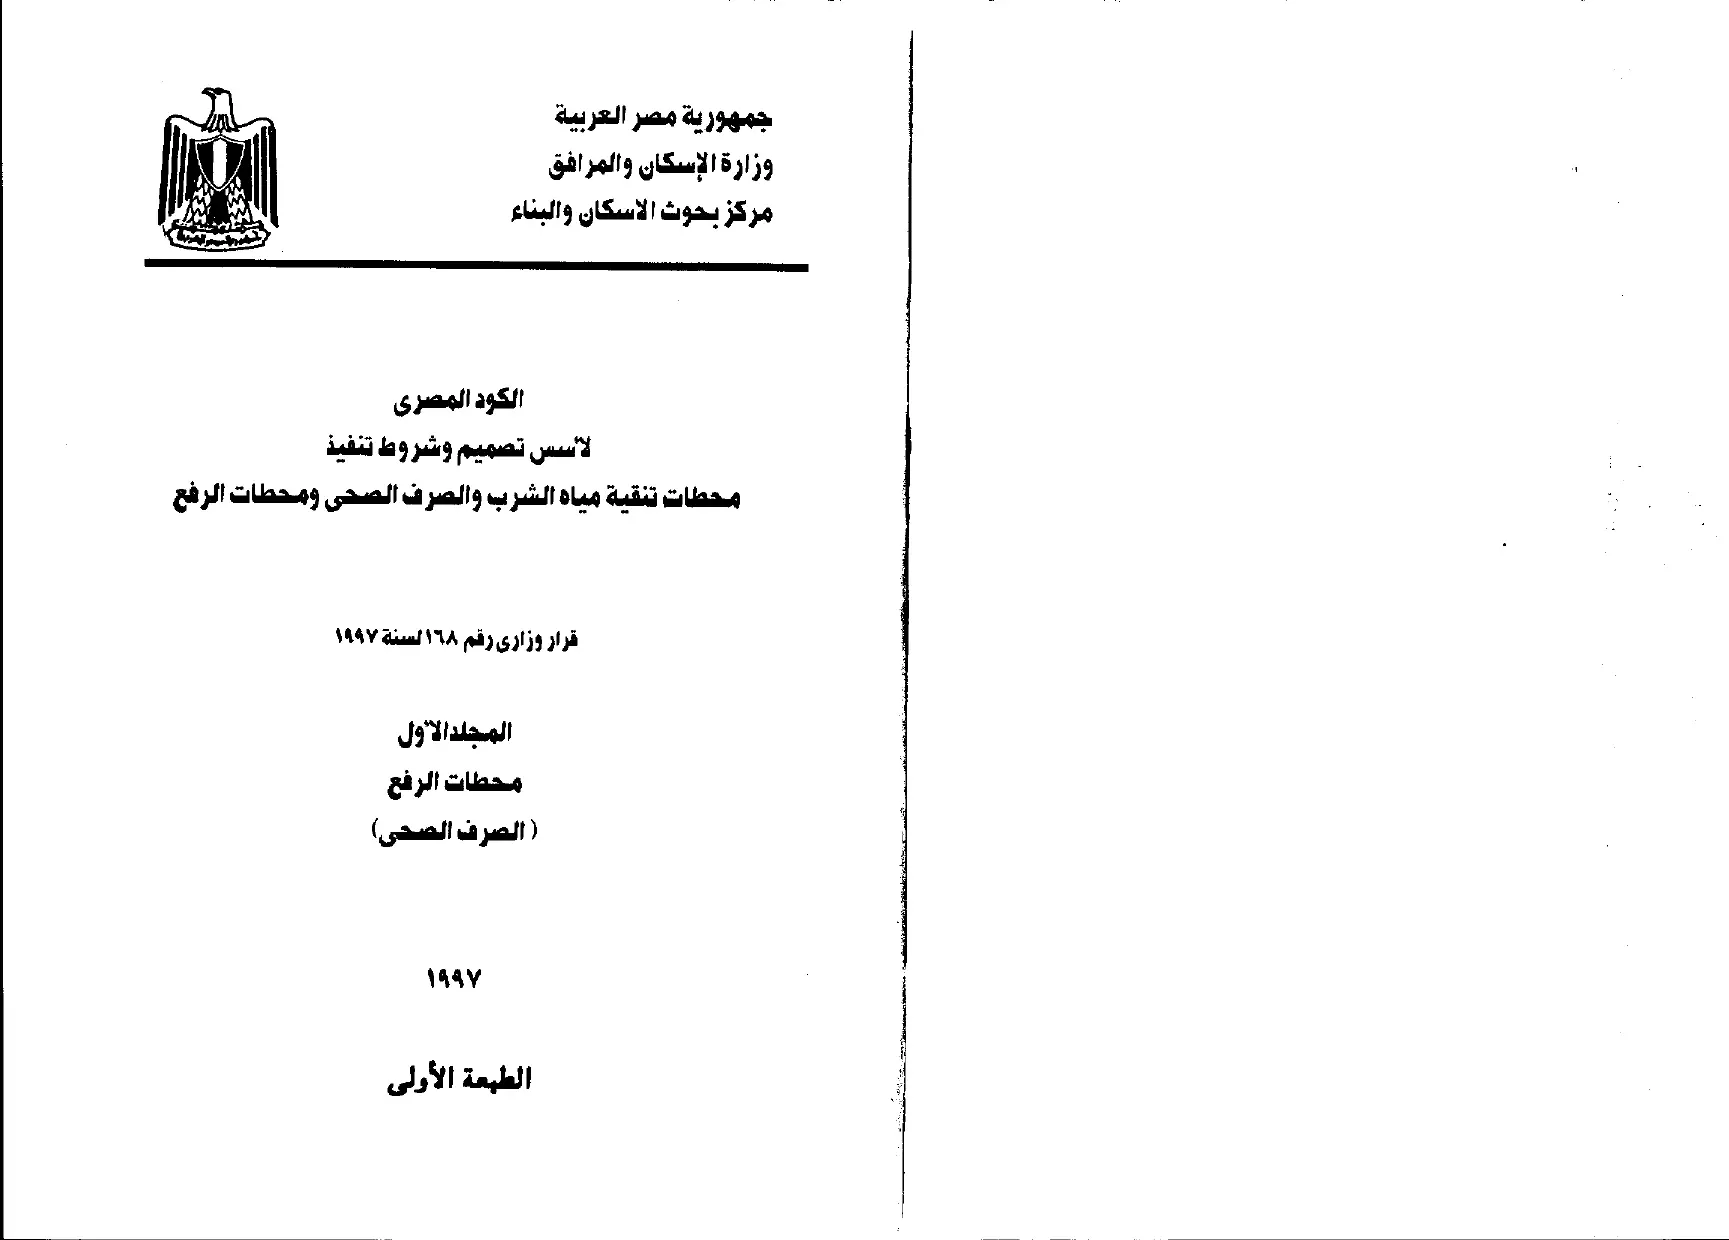 الكود المصري (المجلد الأول محطات الرفع - الصرف الصحي) 1997